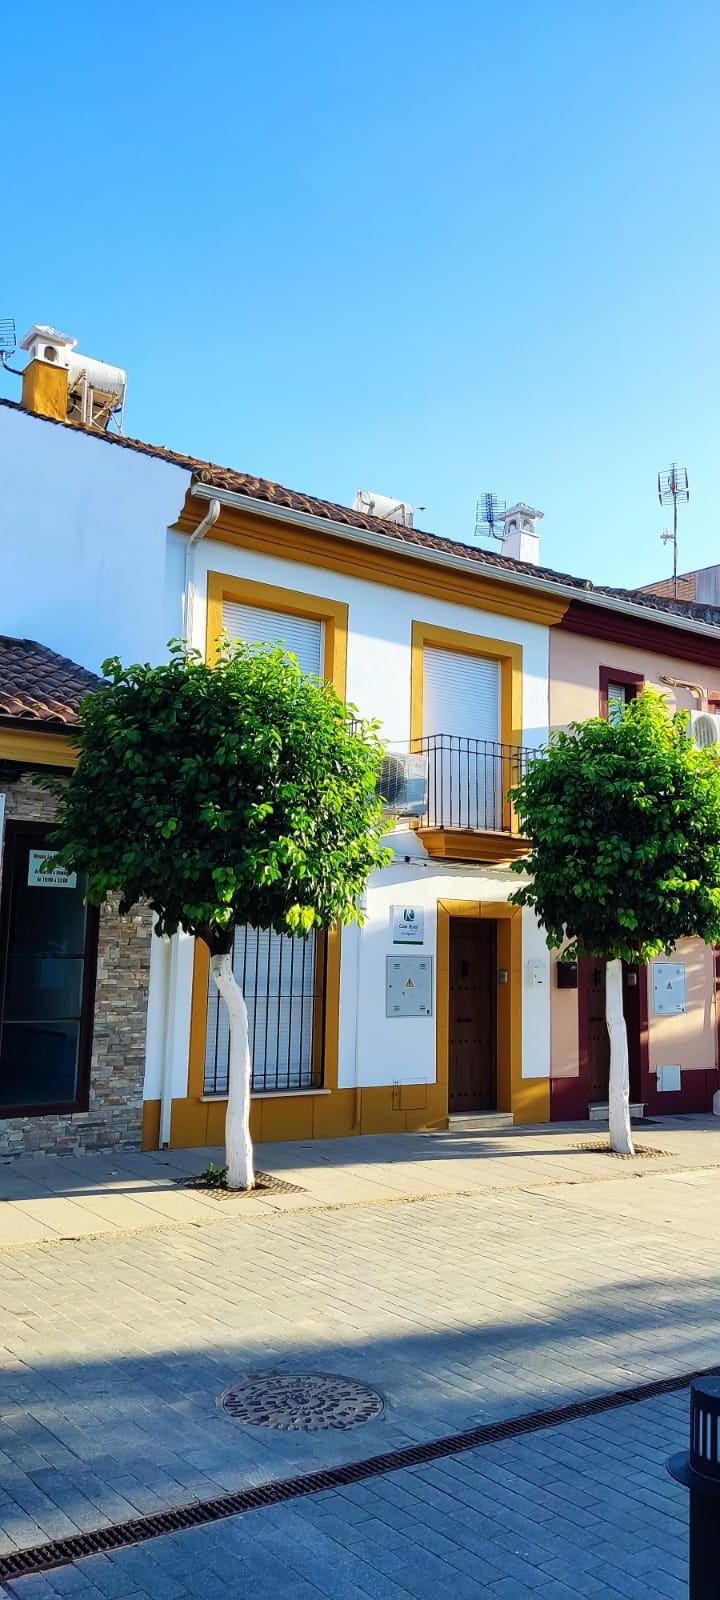 Casa La Cigüeña。位于Encinarejo
的舒适房子。